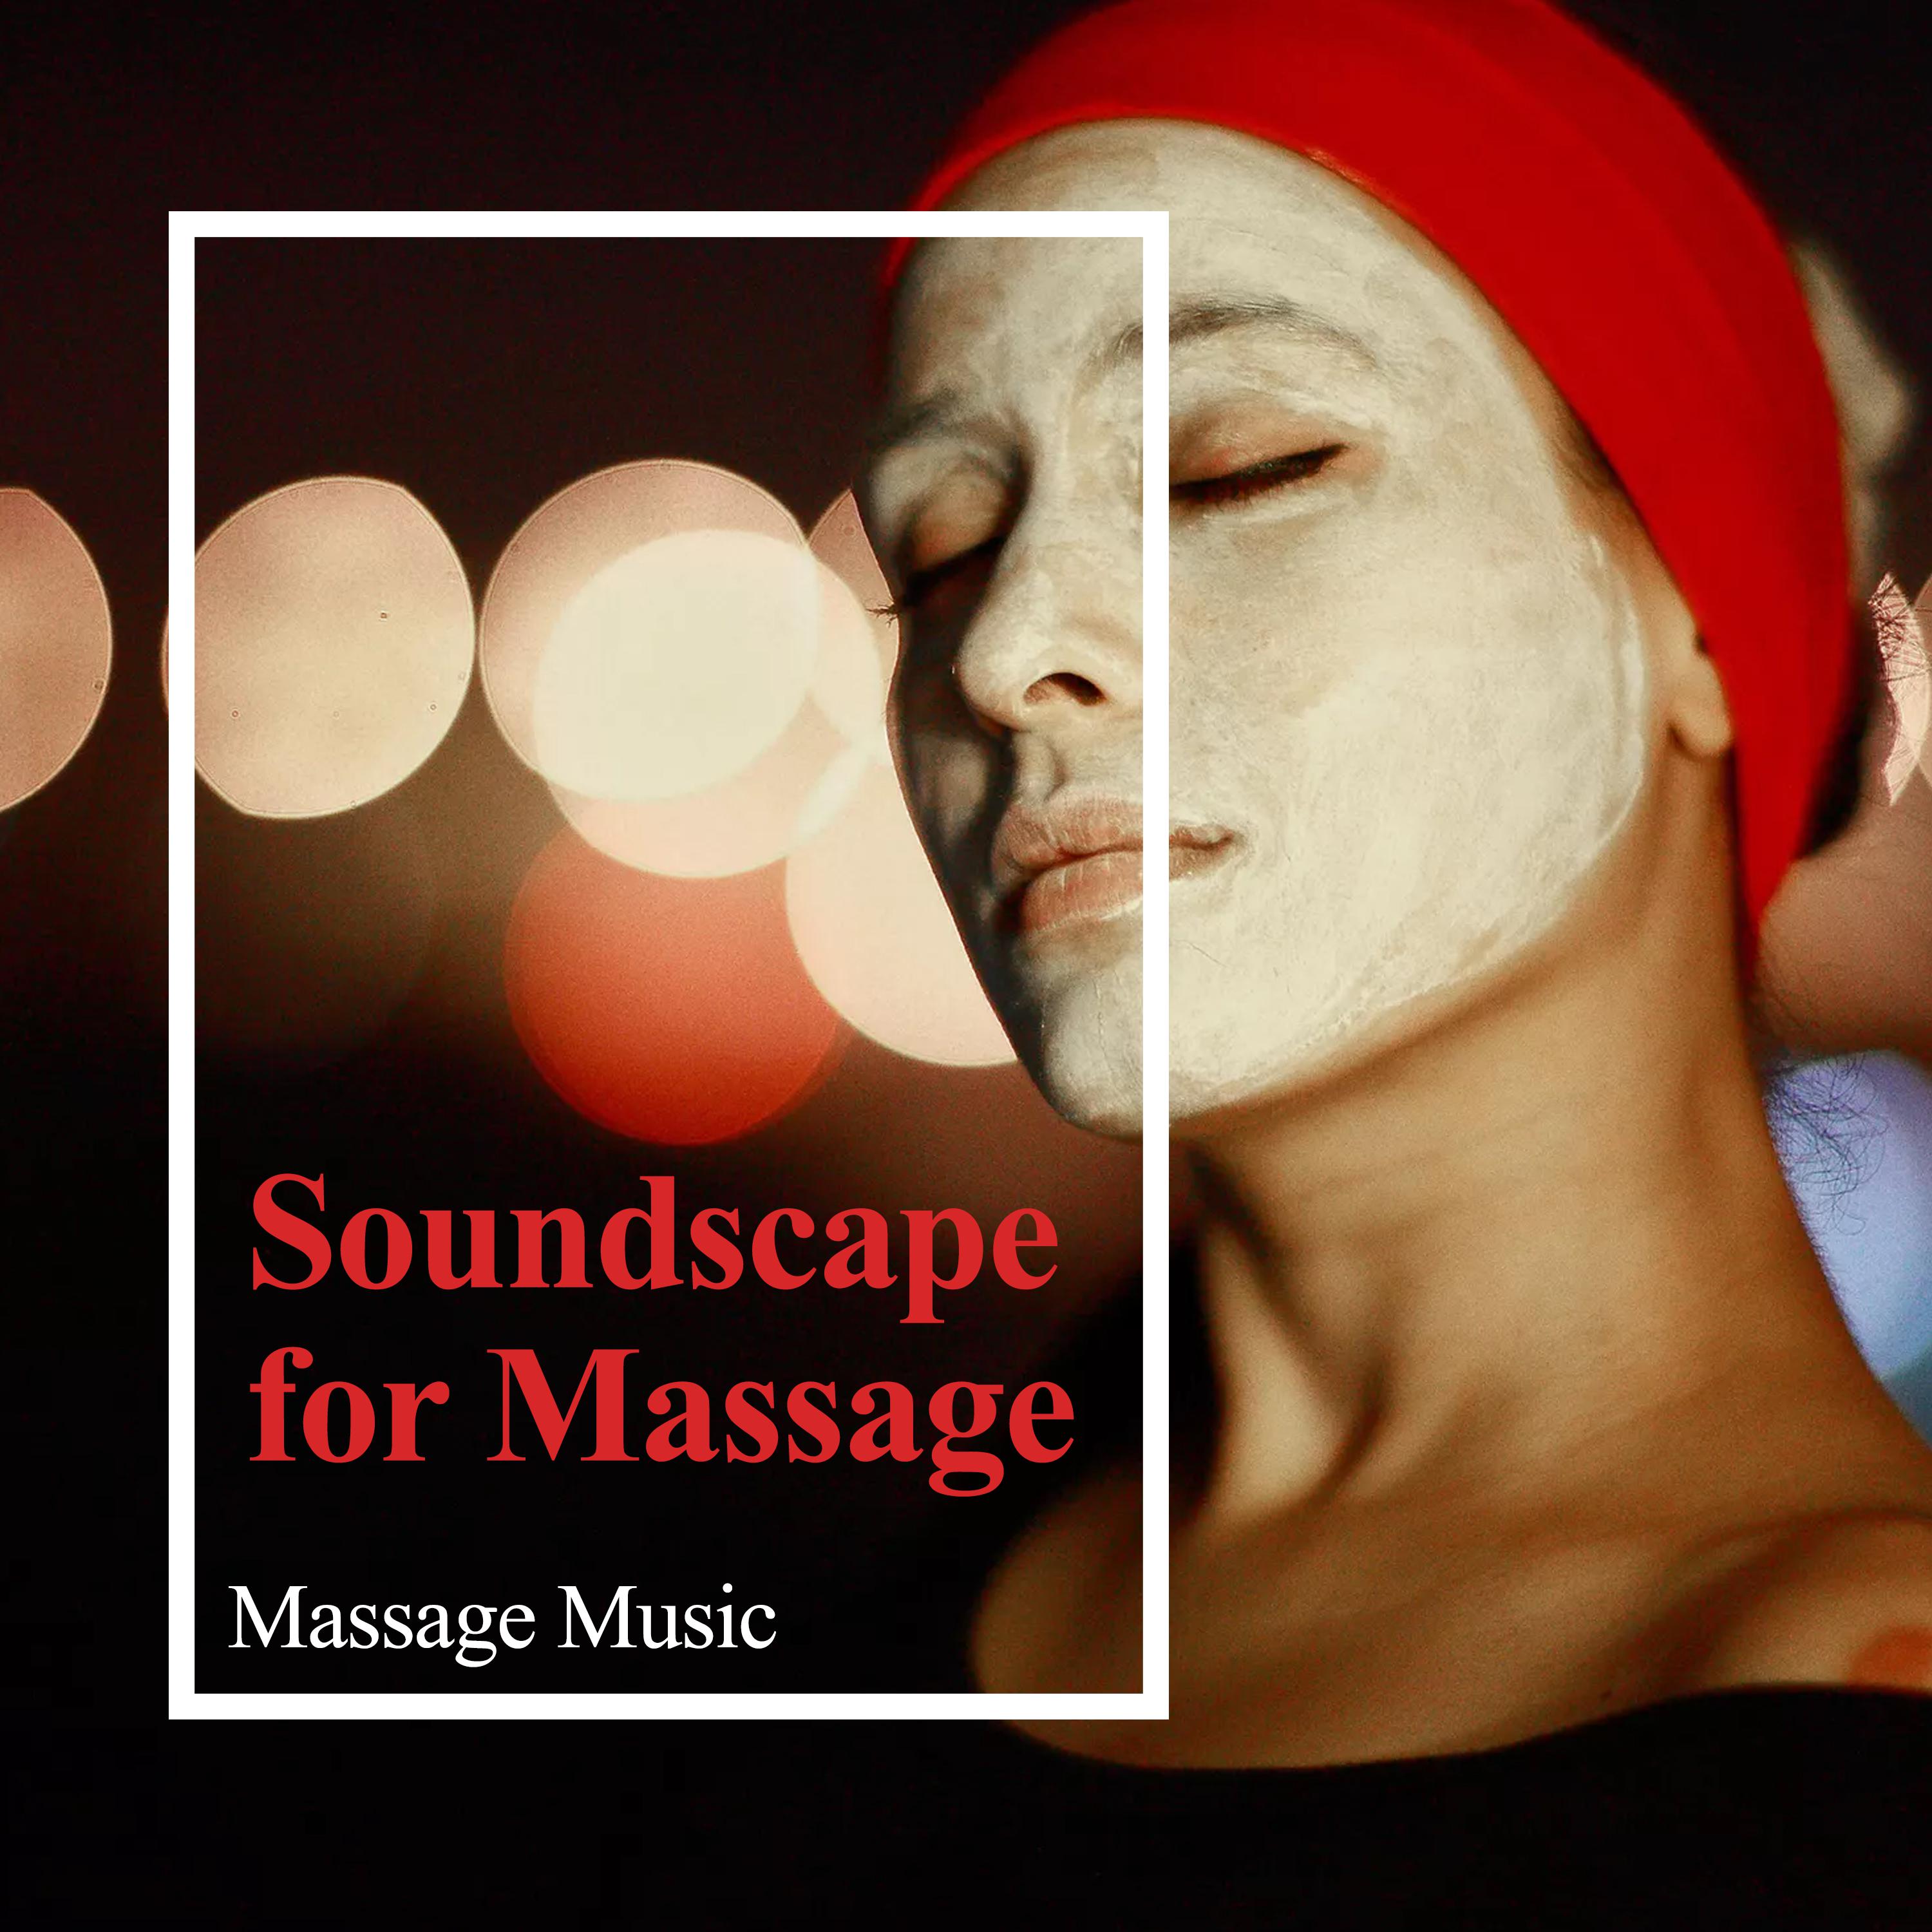 Soundscape for Massage